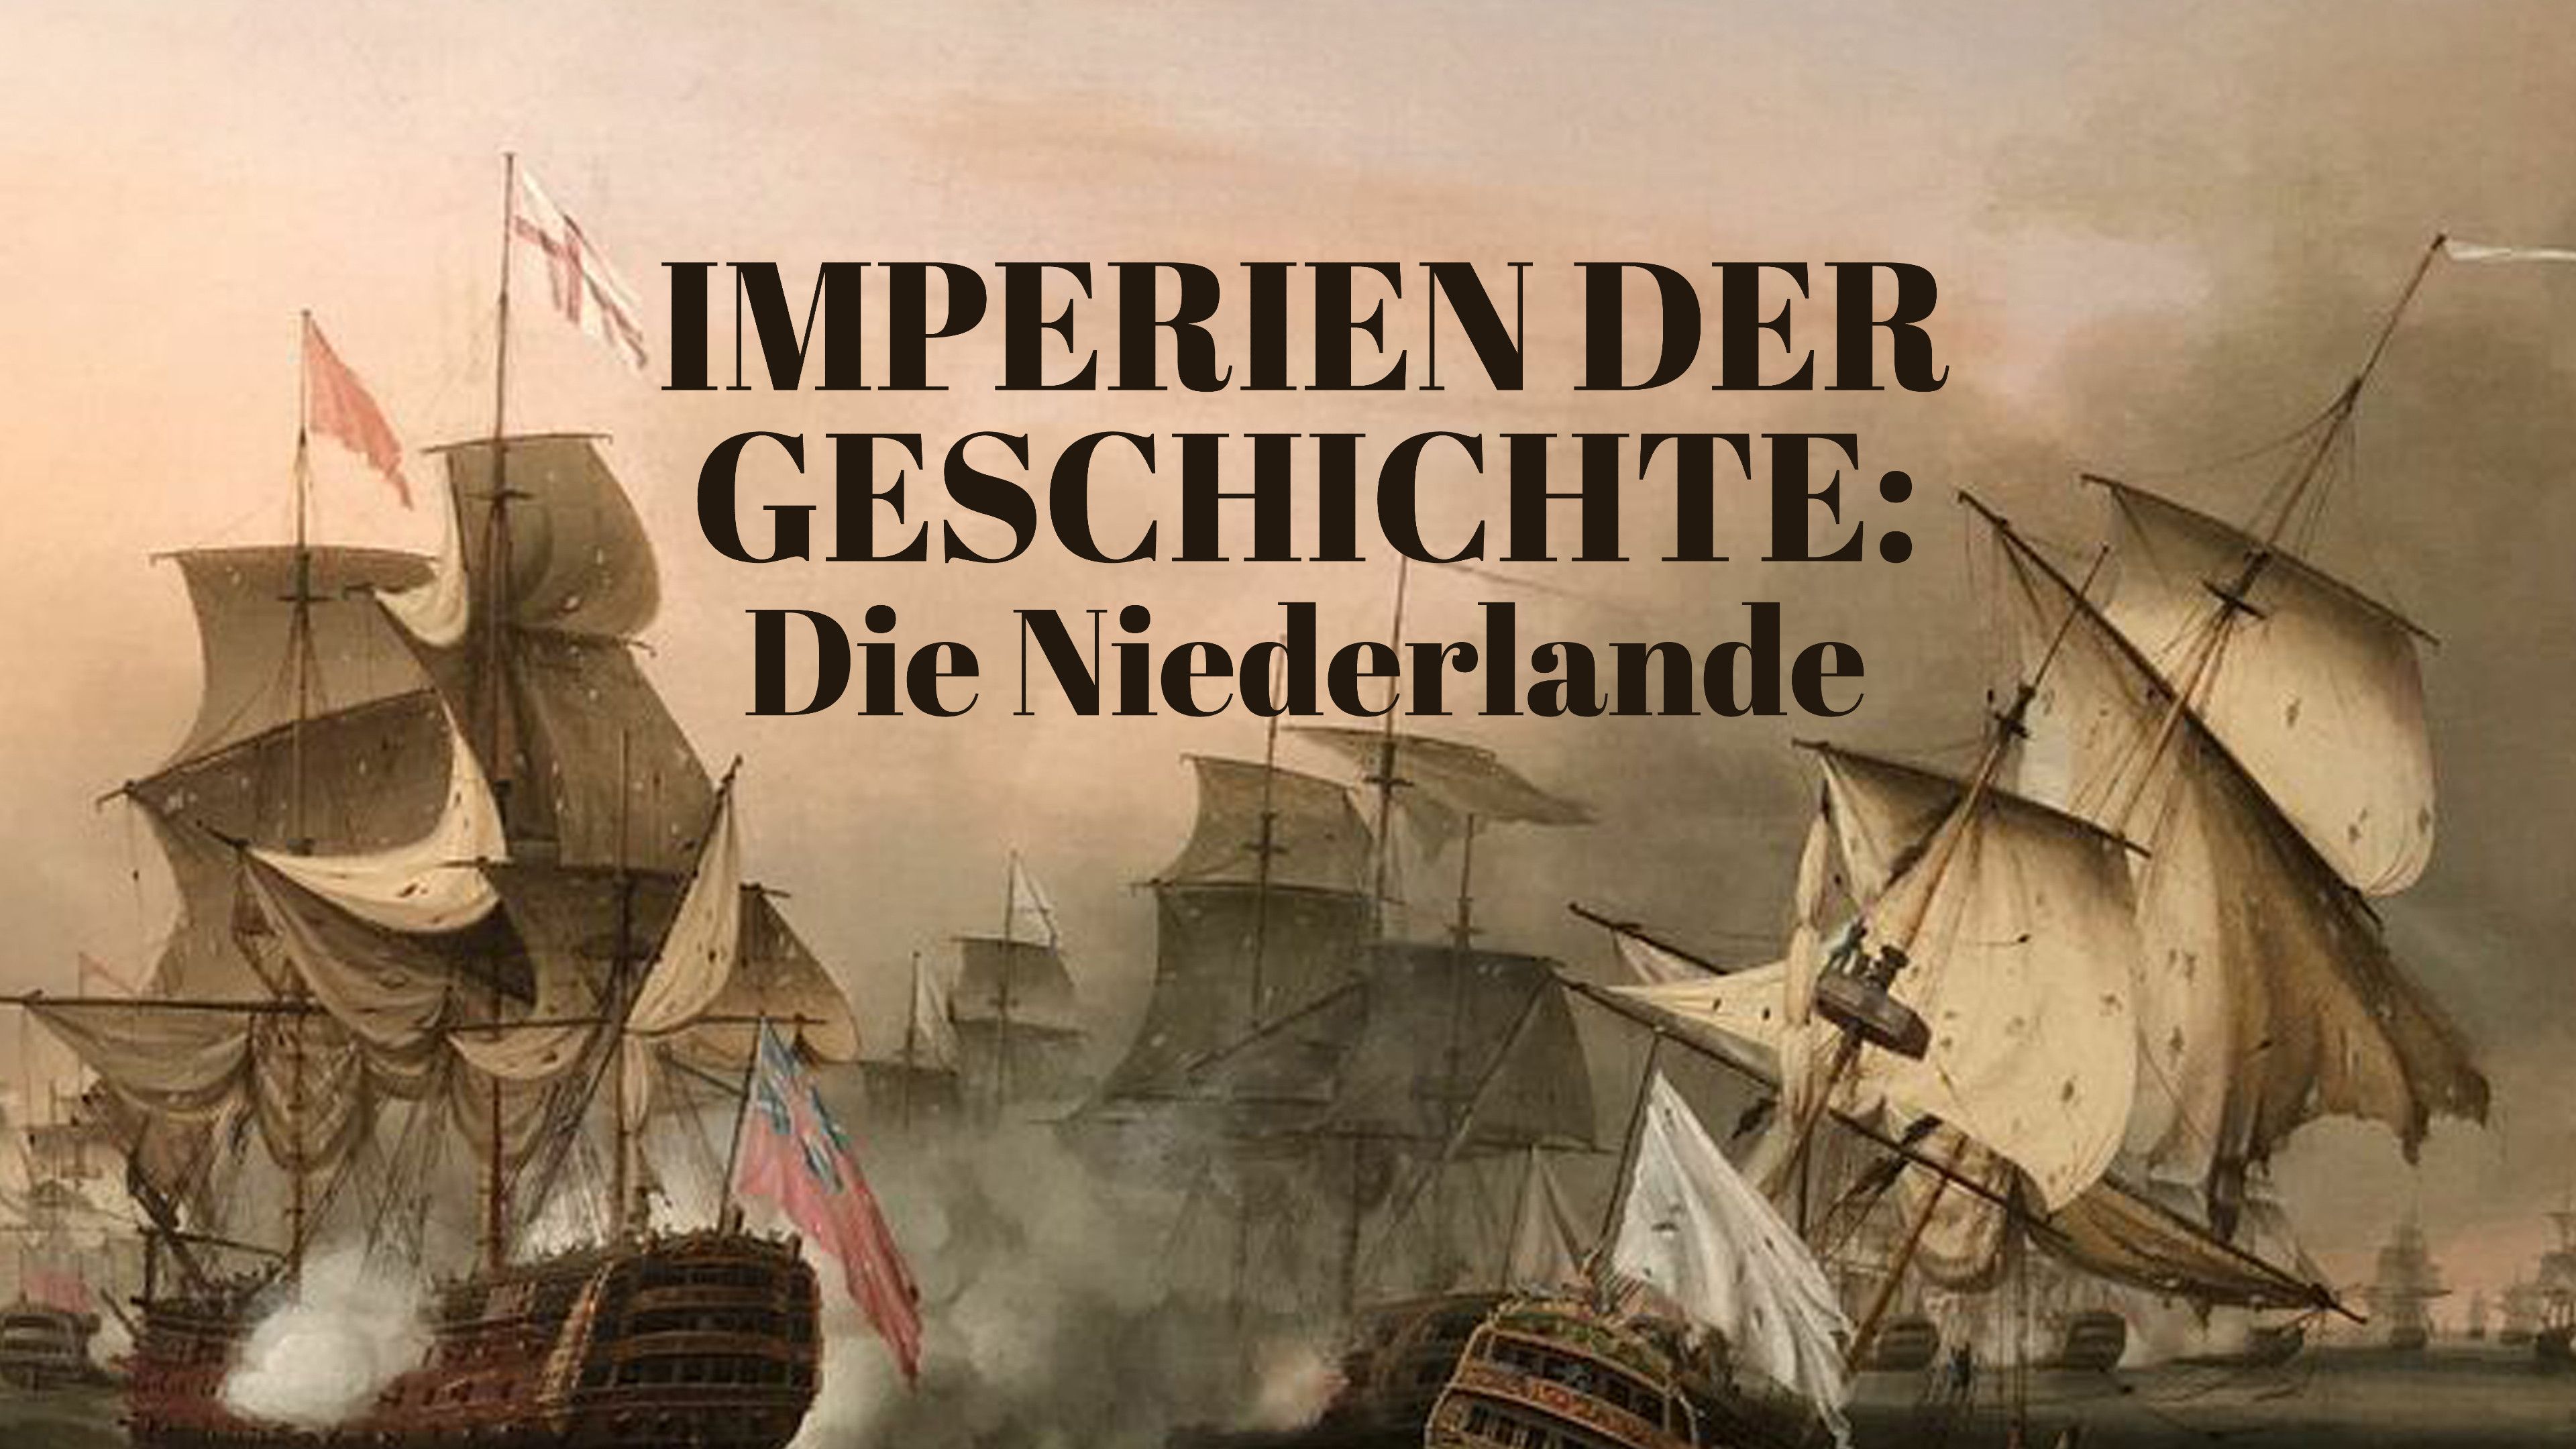 Imperien der Geschichte: Die Niederlande